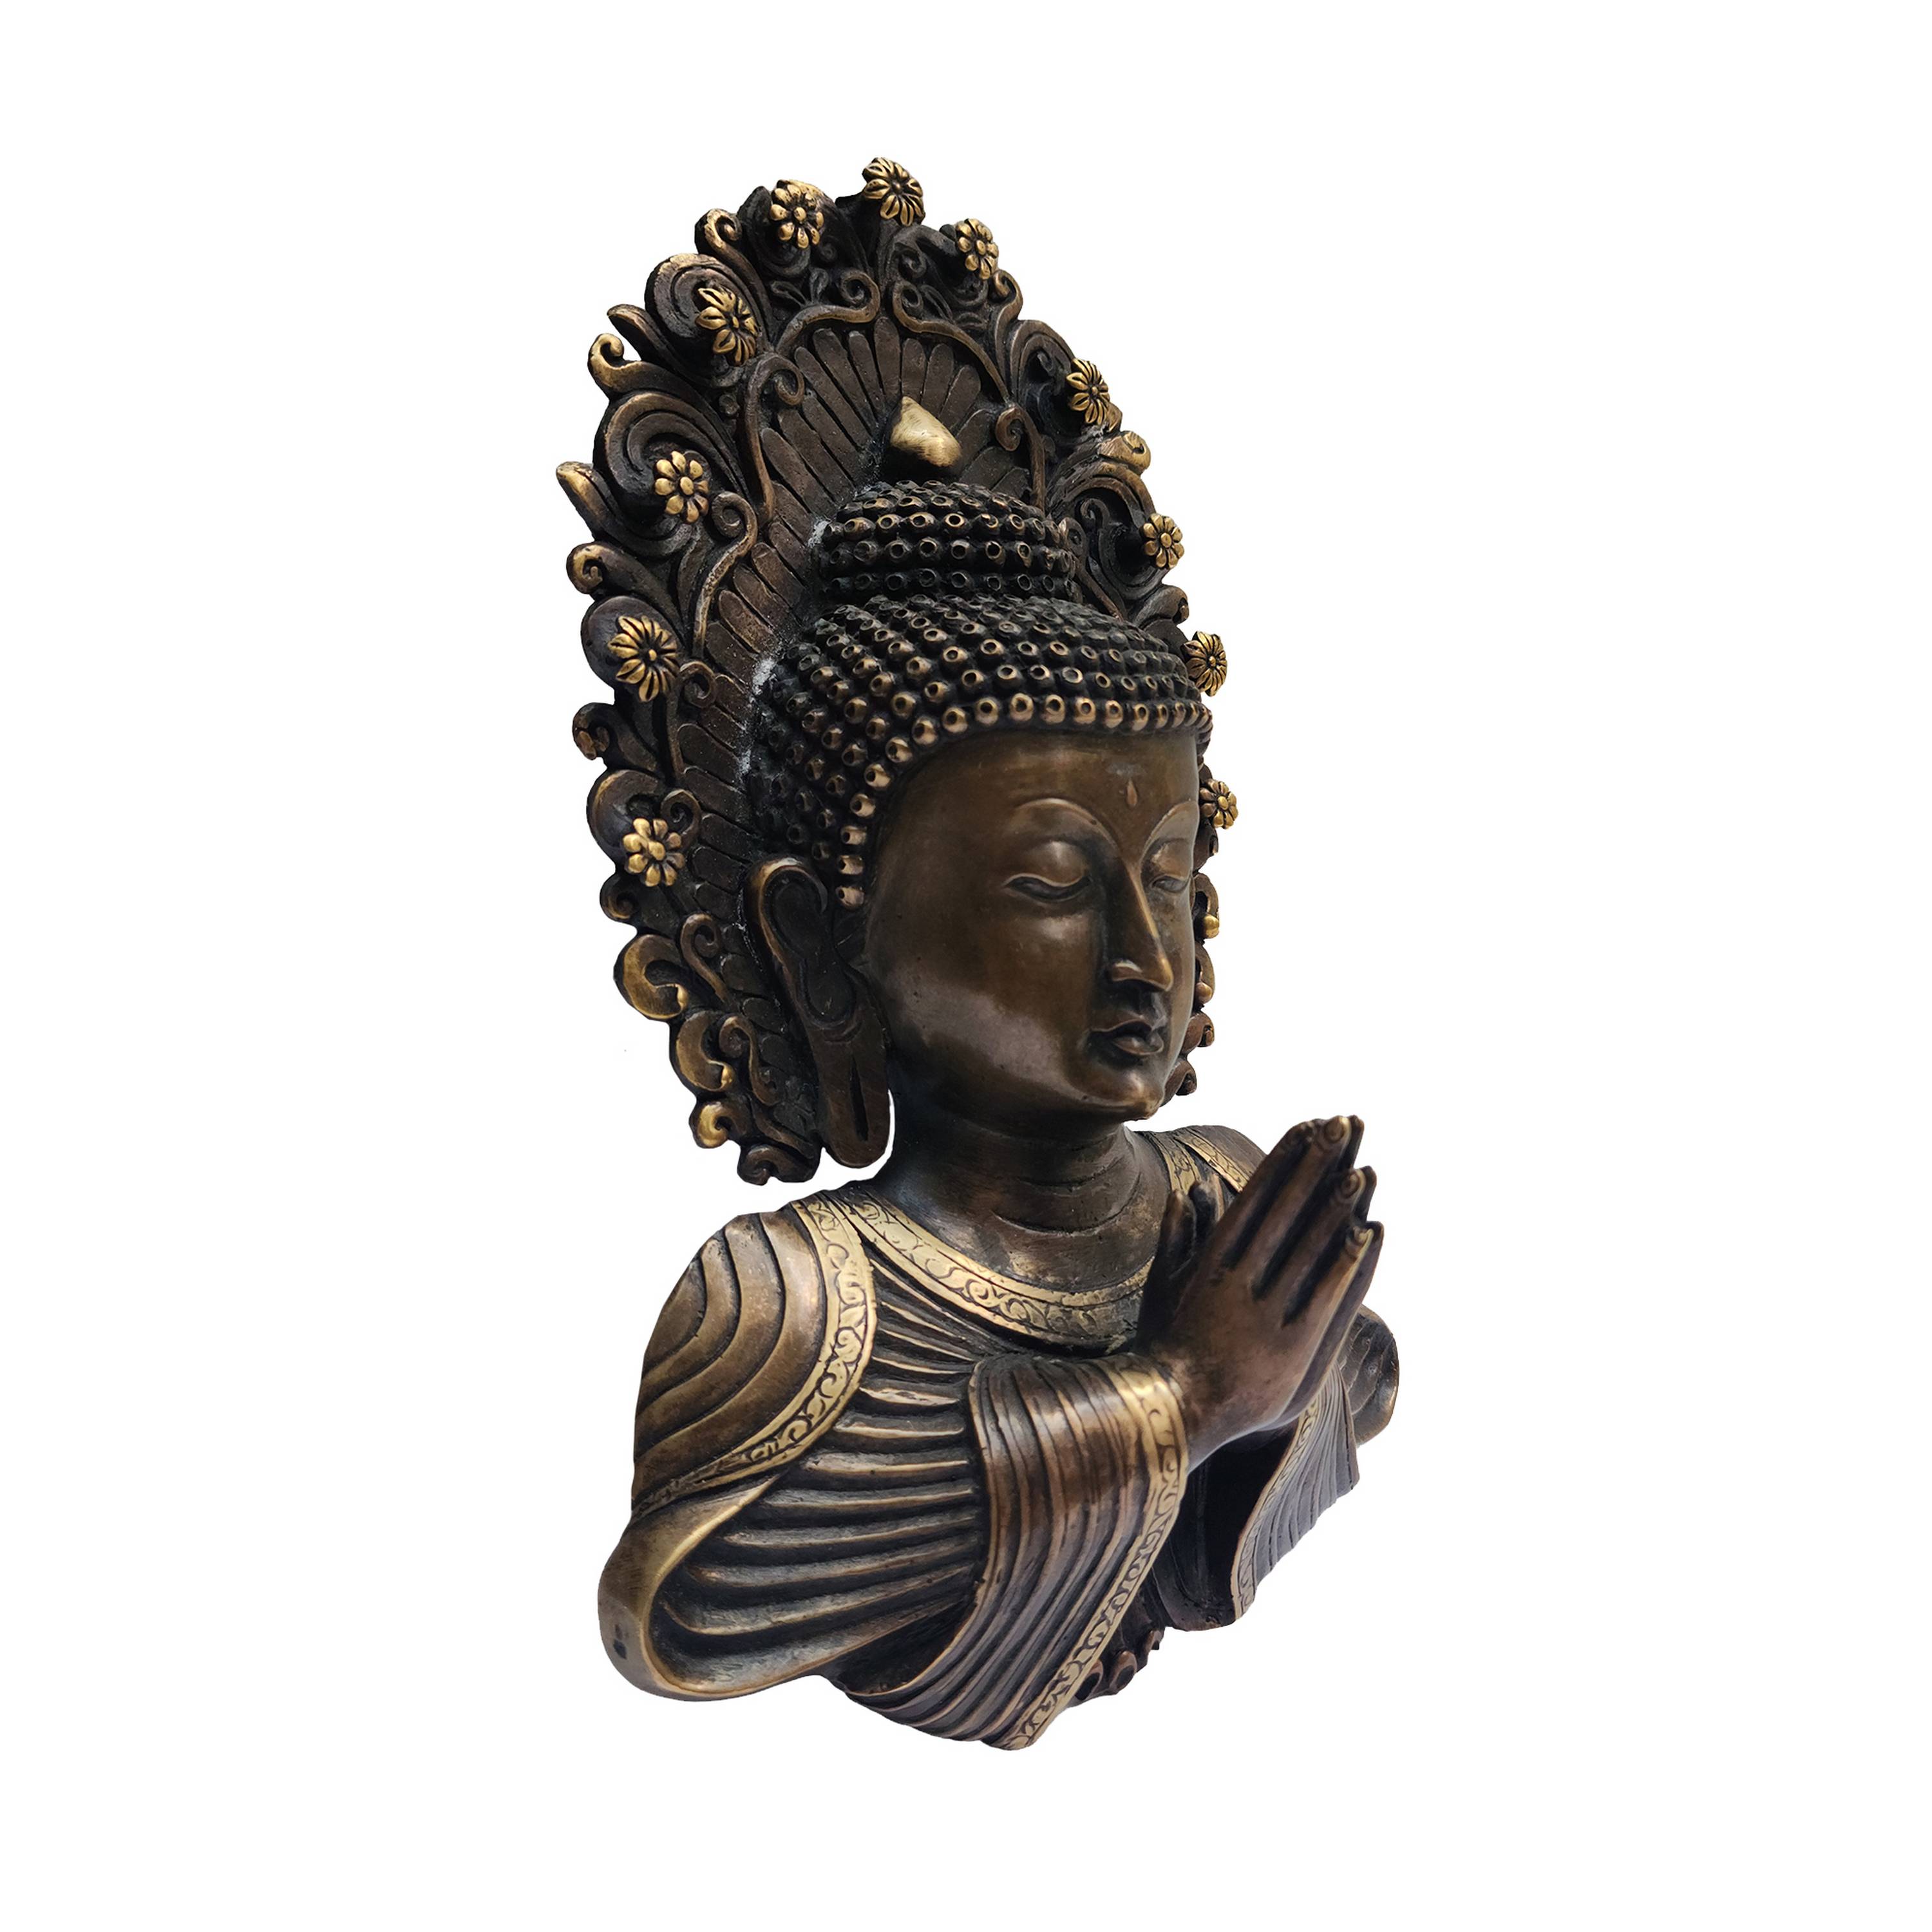 Buddha Metal Mask, Buddhist Handmade Ritual Mask, Antique Finishing